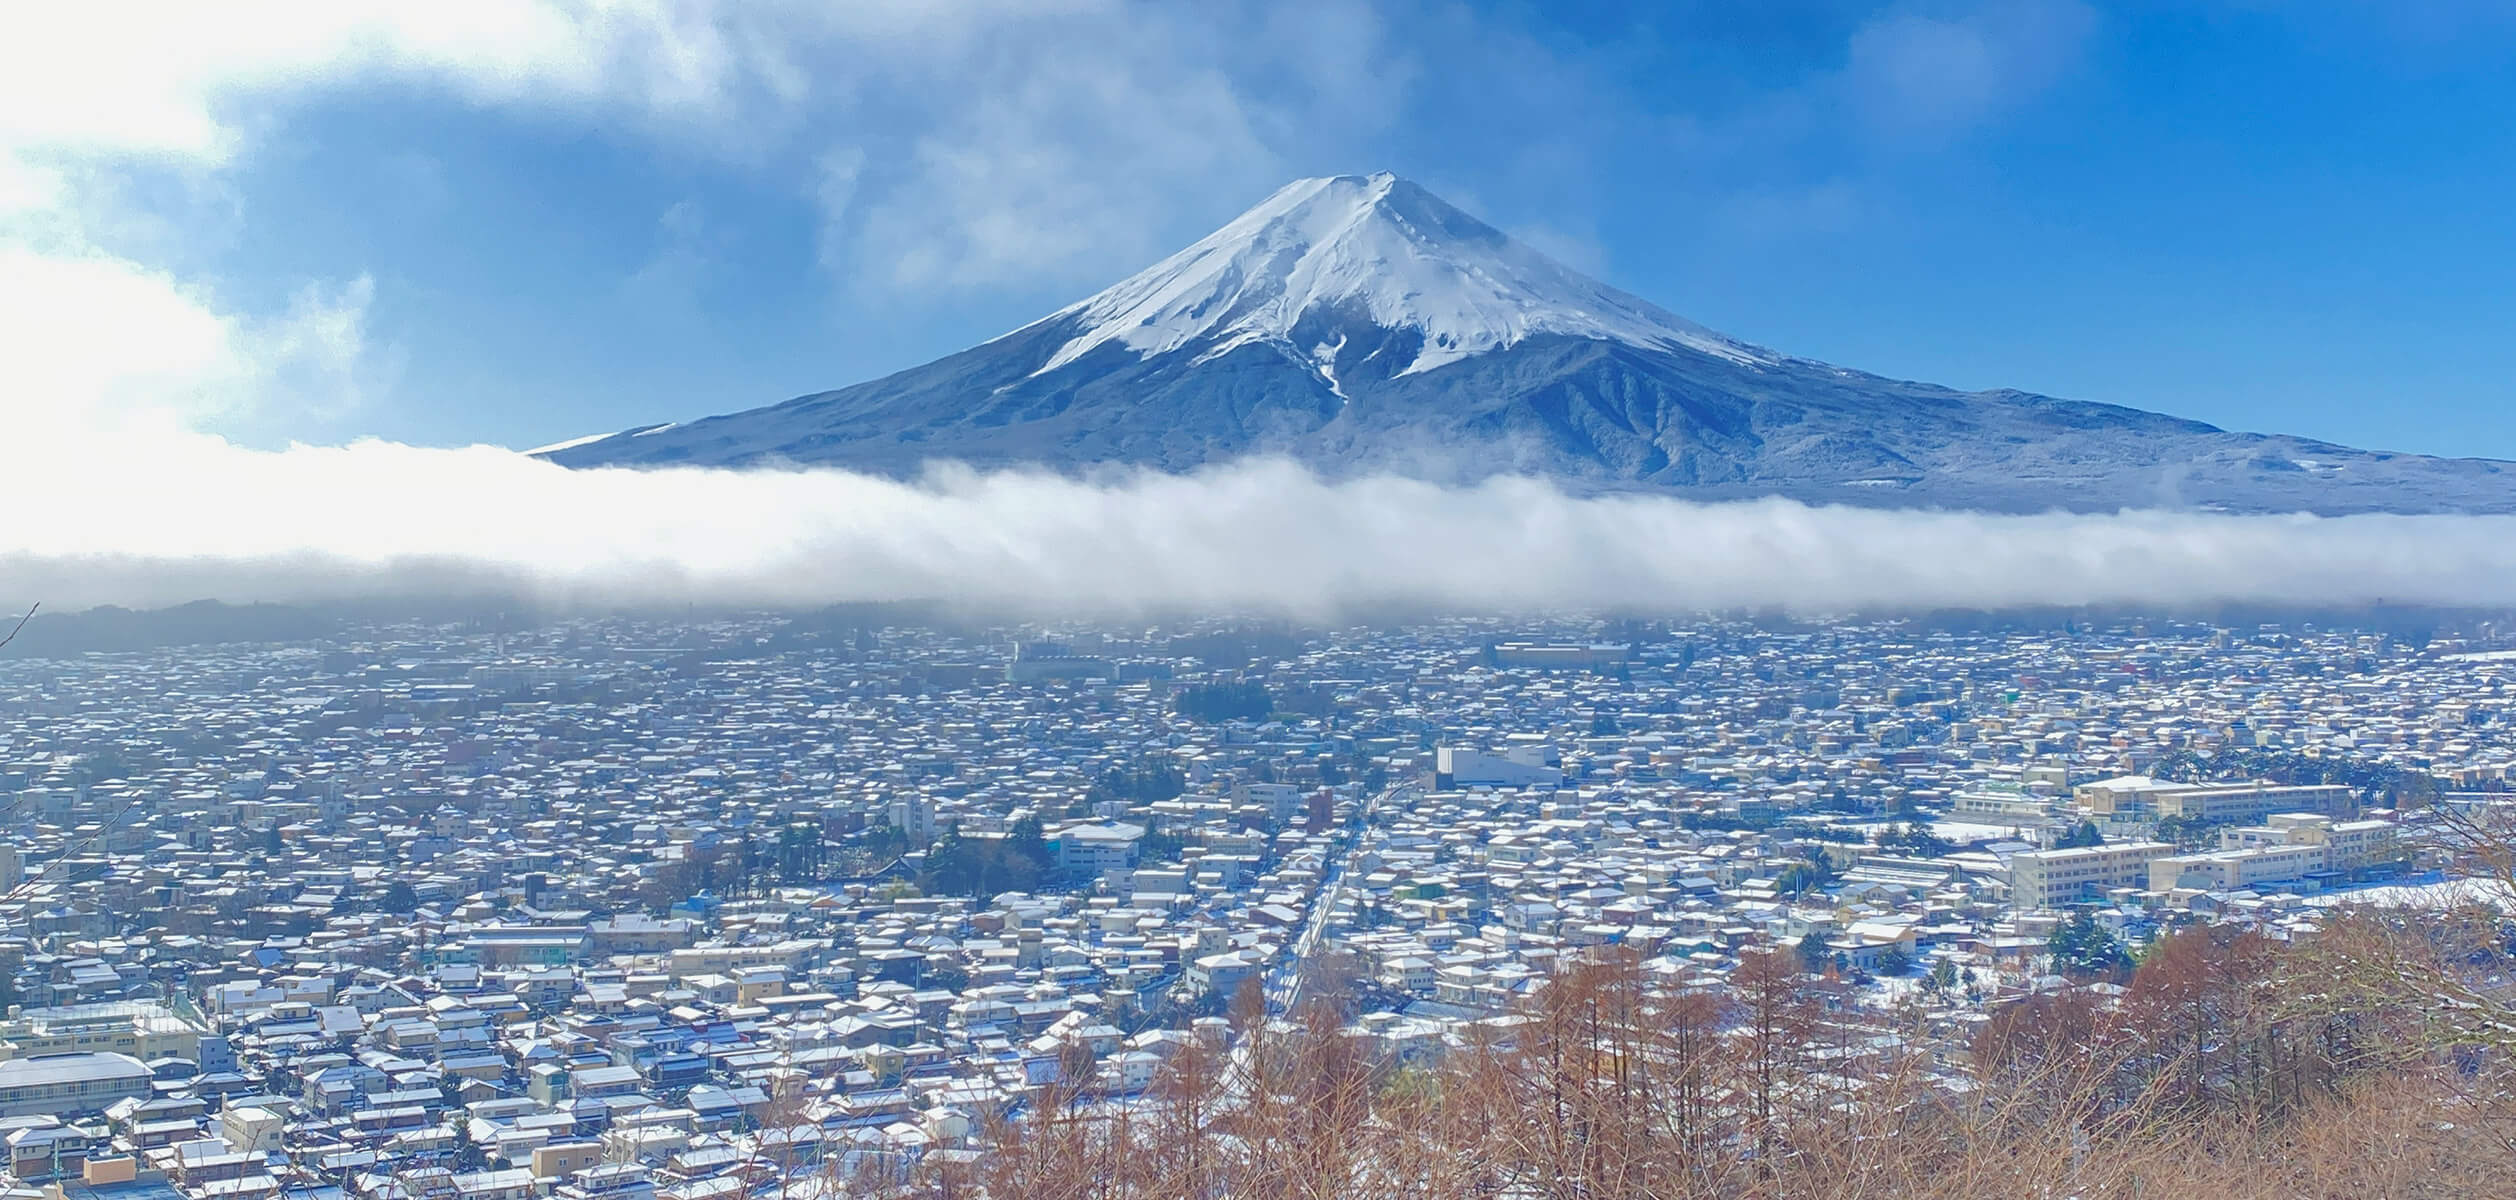 世界遺産 富士山のイメージ画像が表示されています。